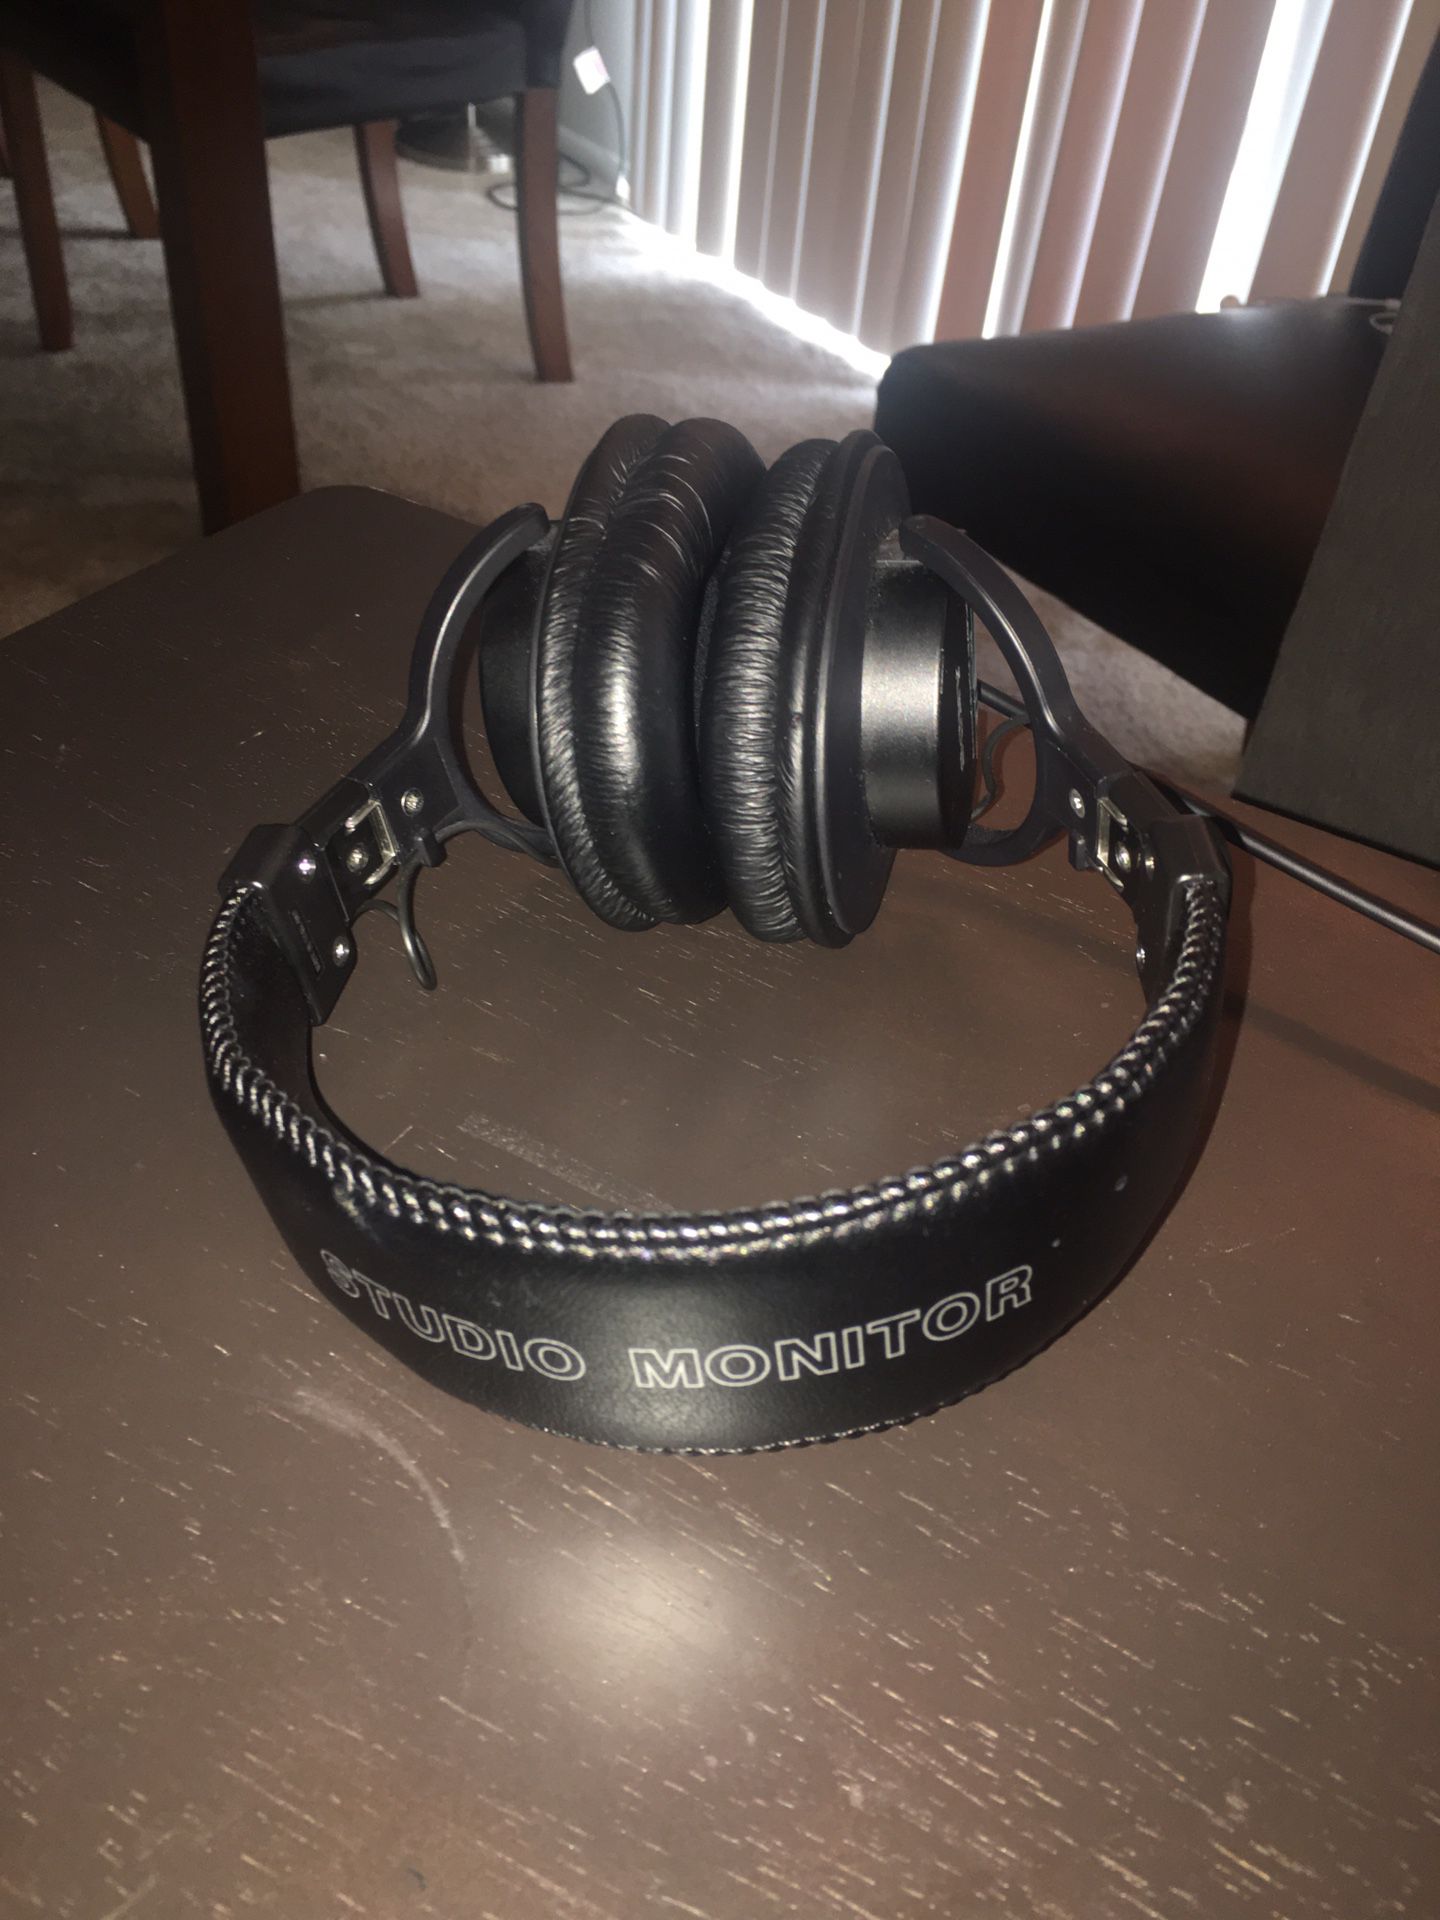 Sony professional headphones